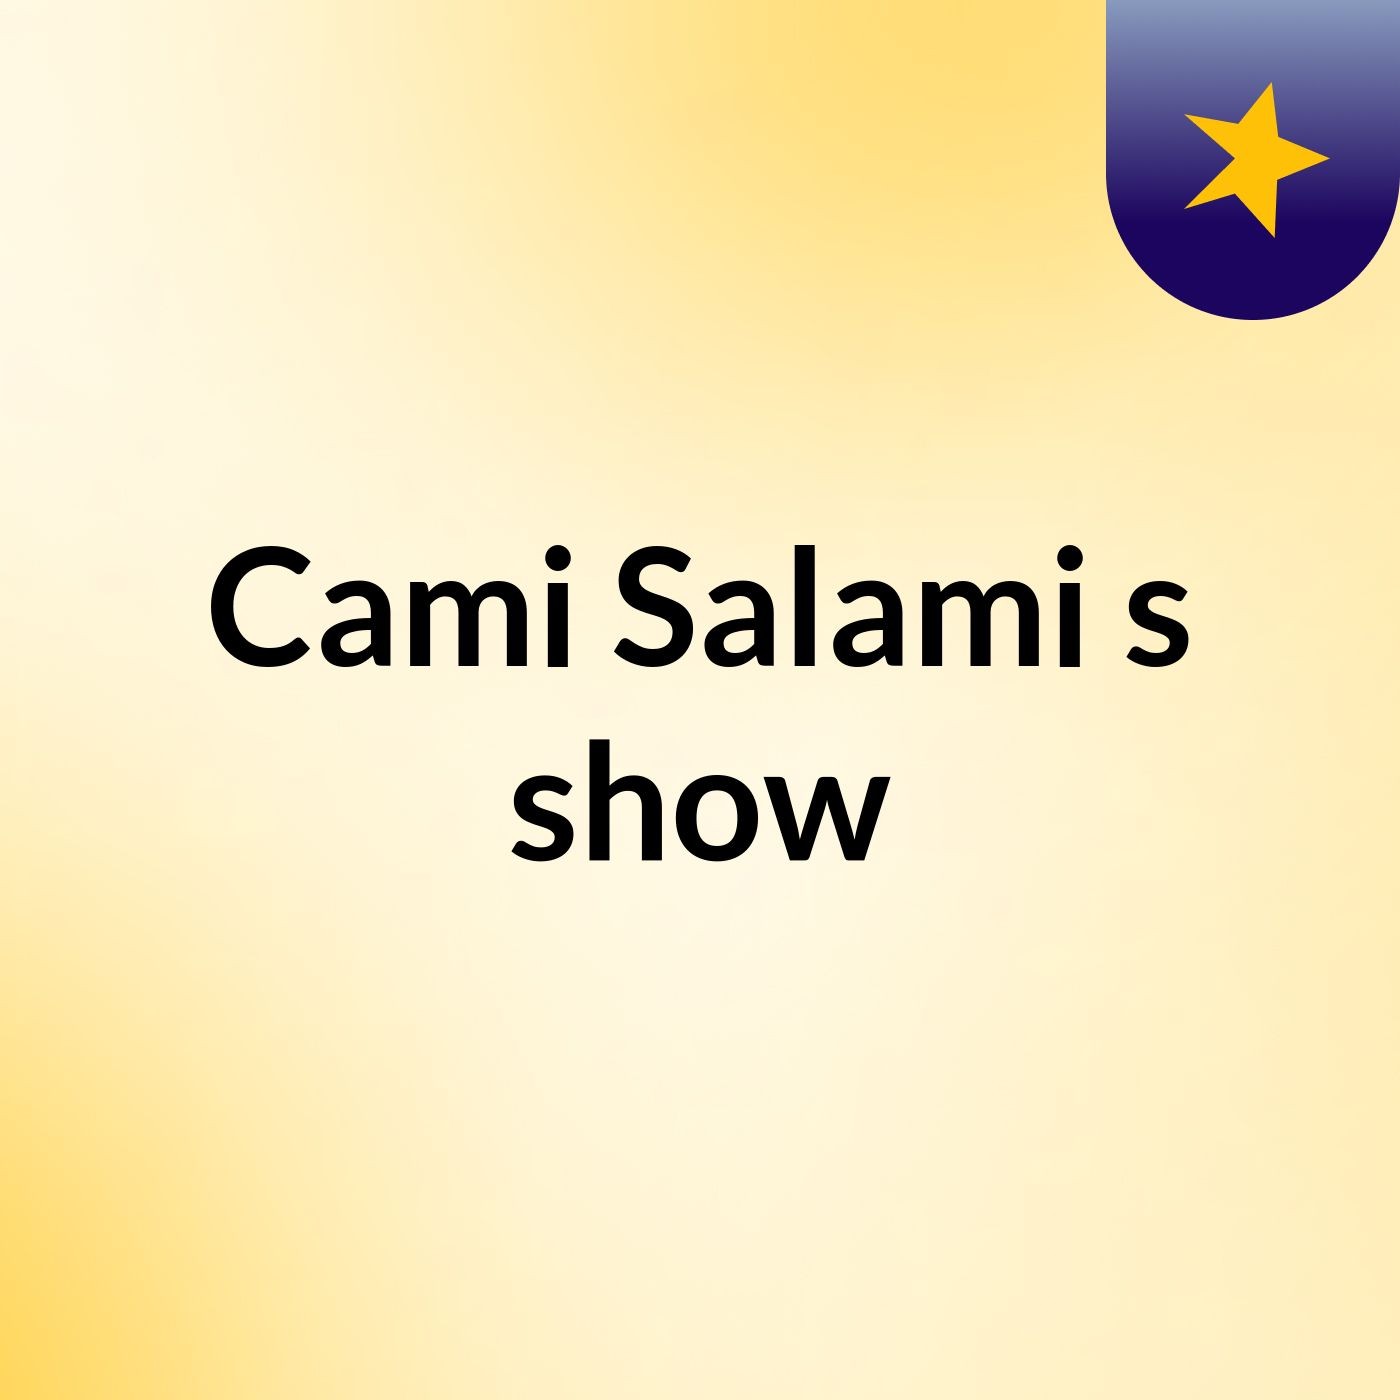 Cami Salami's show